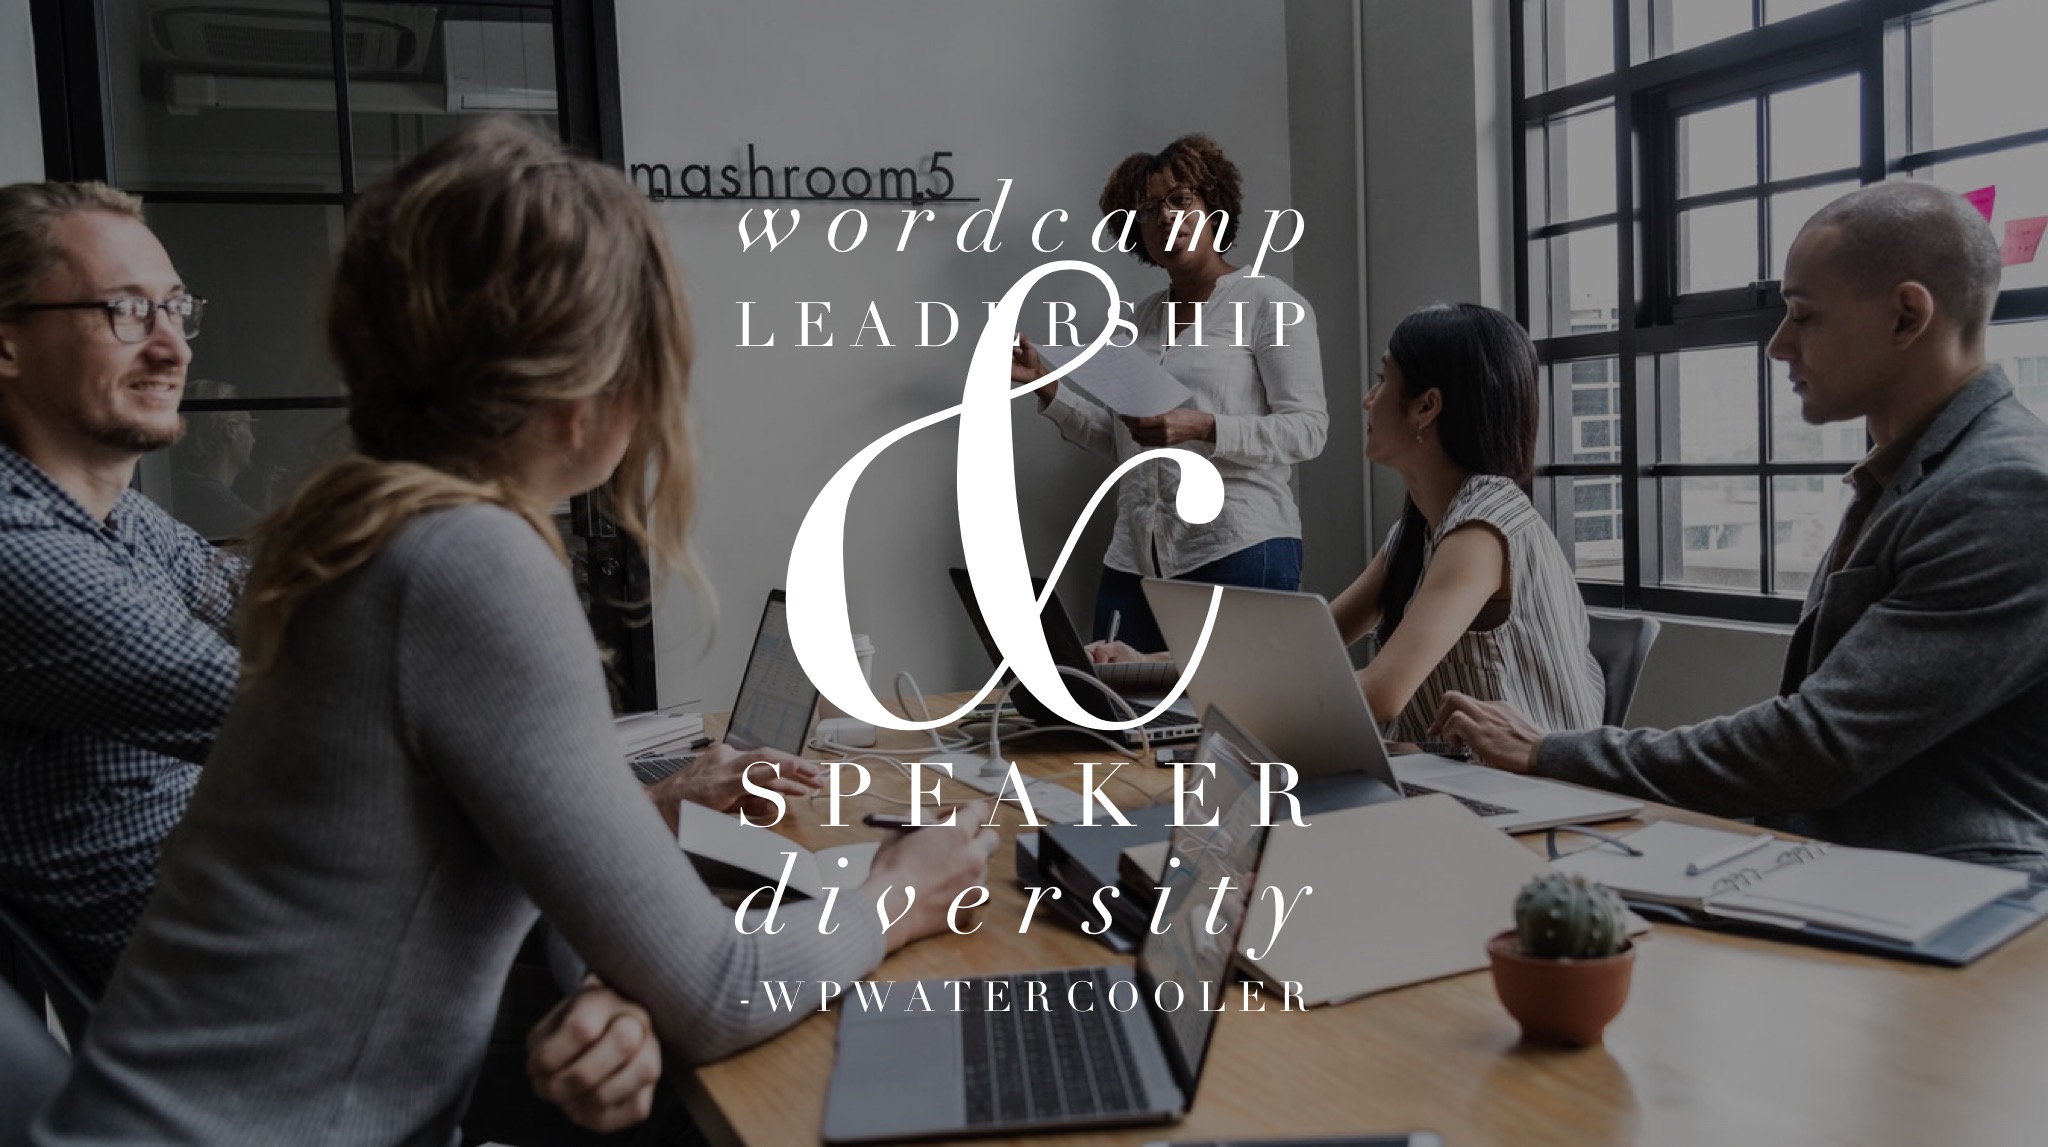 EP293 - WordCamp Leadership & Speaker Diversity - WPwatercooler